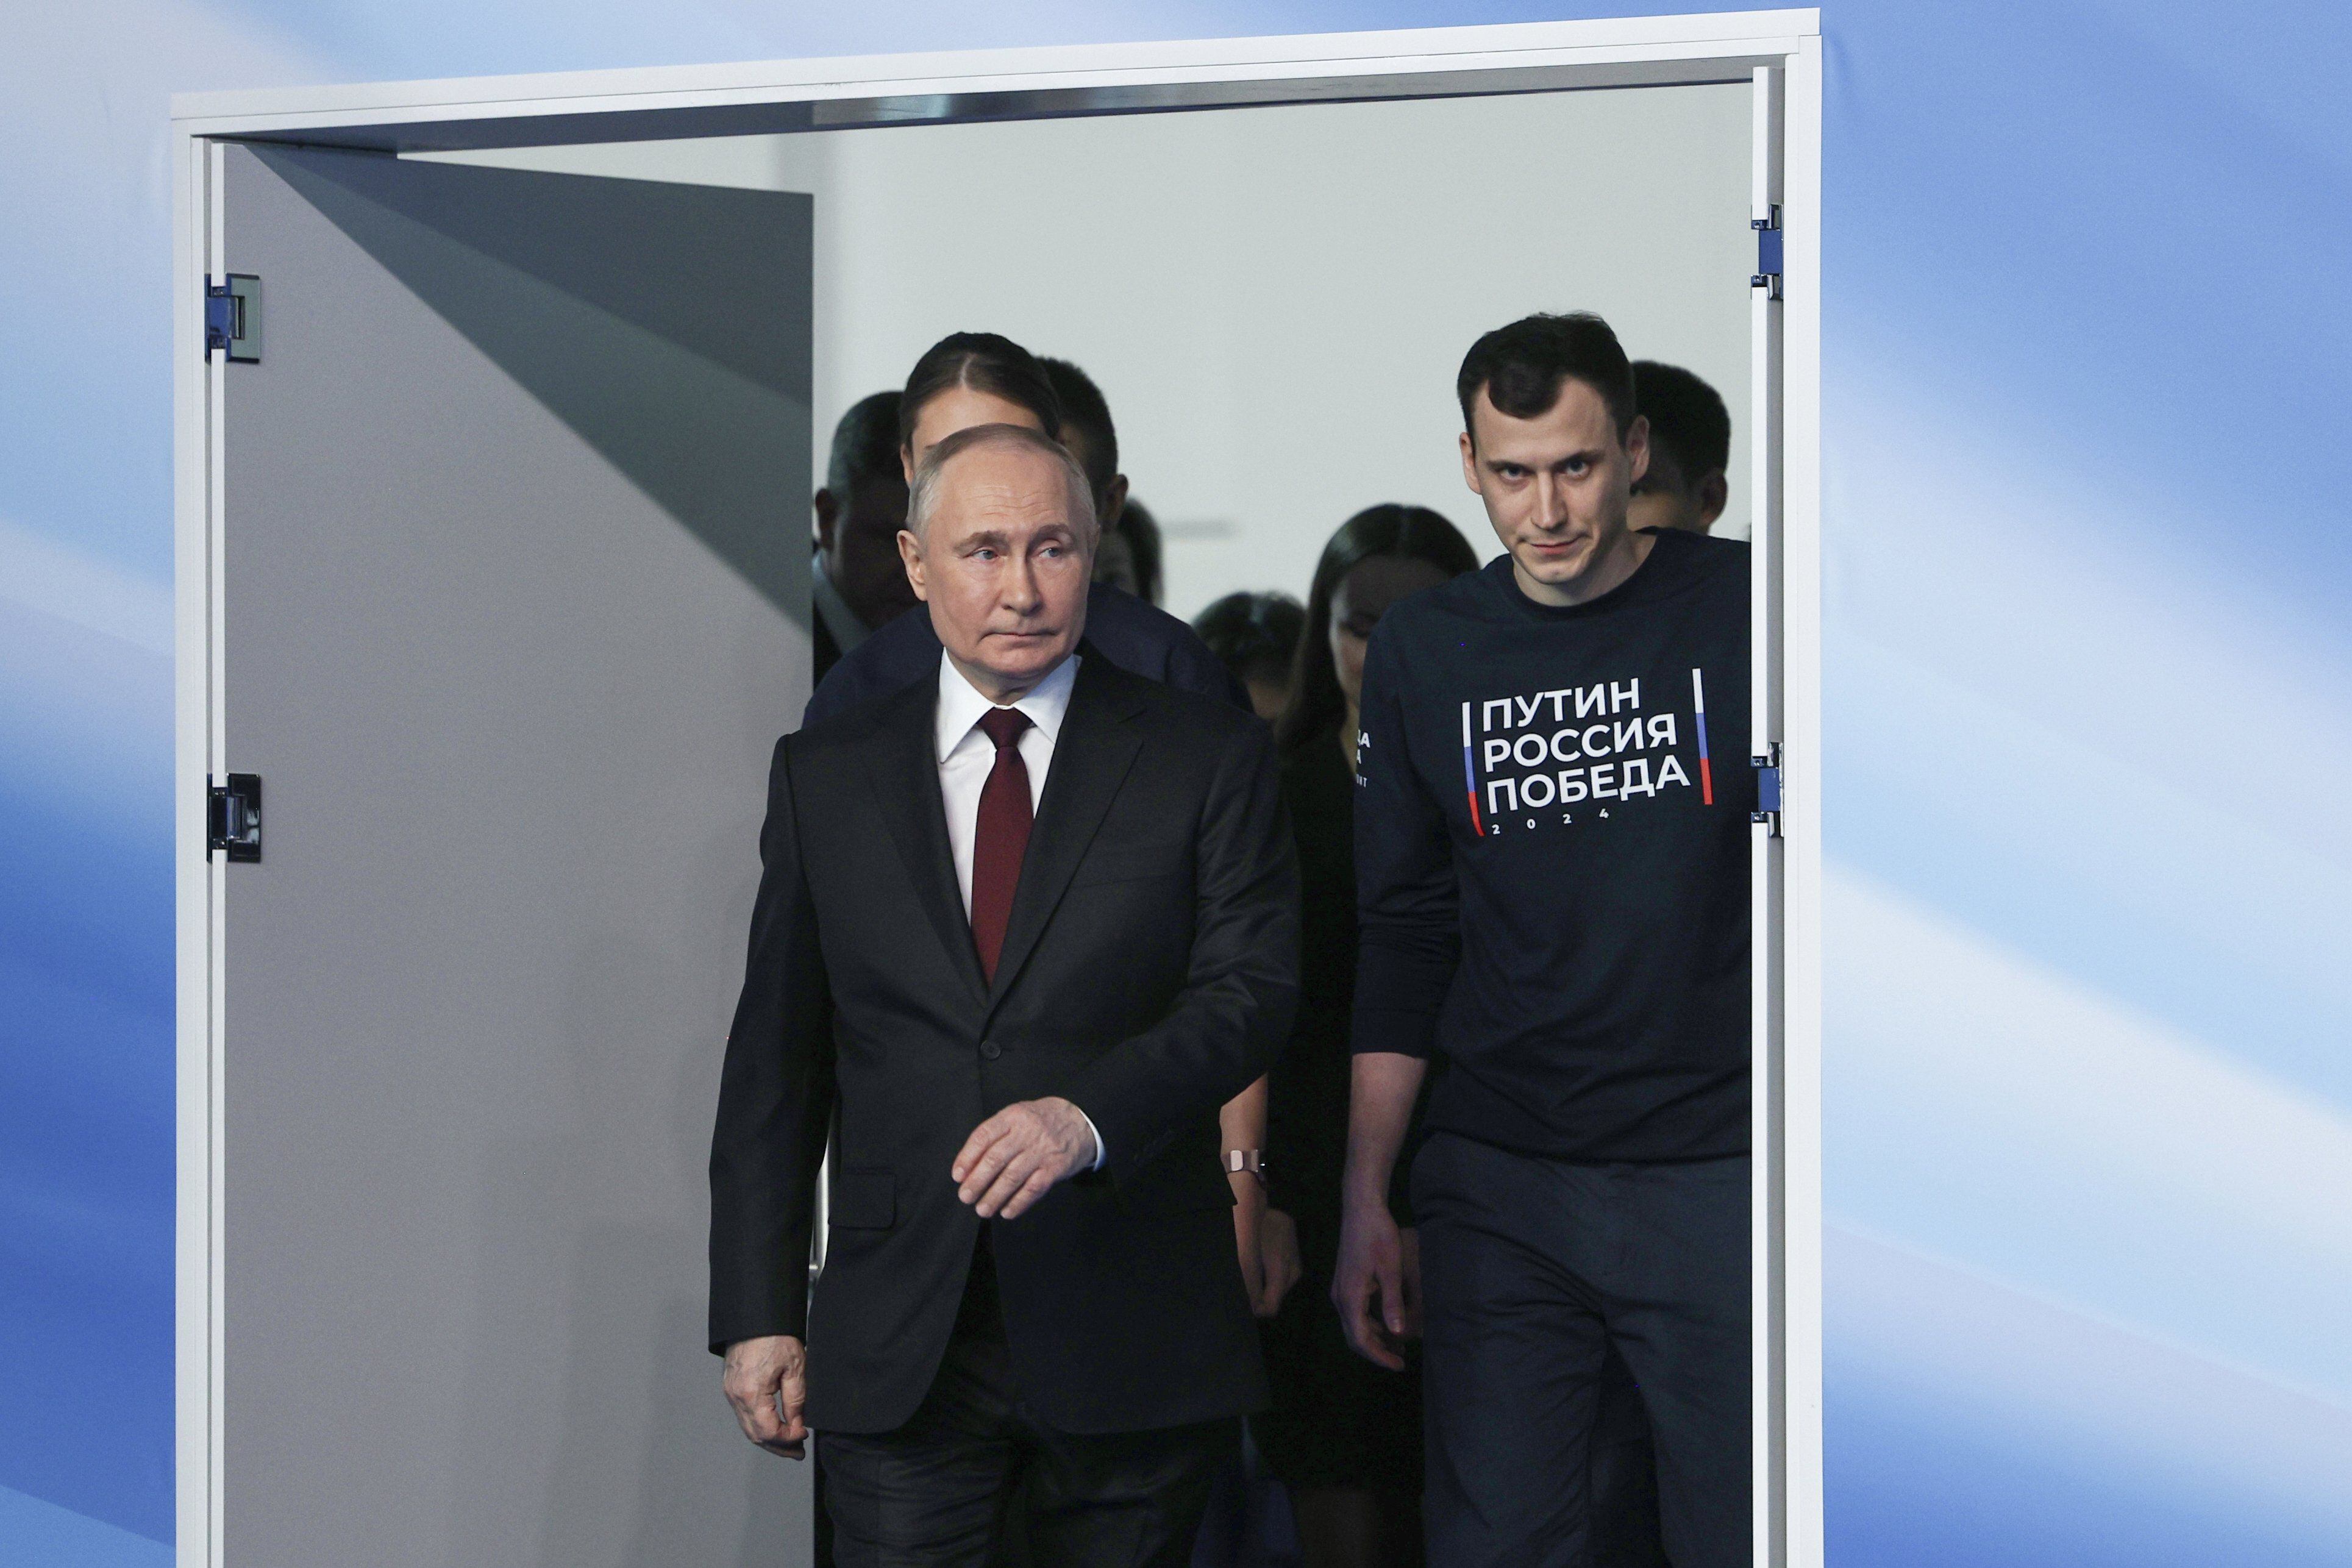 Putin nombró por primera vez a Navalny en años y reveló un dato de los días previos a su muerte